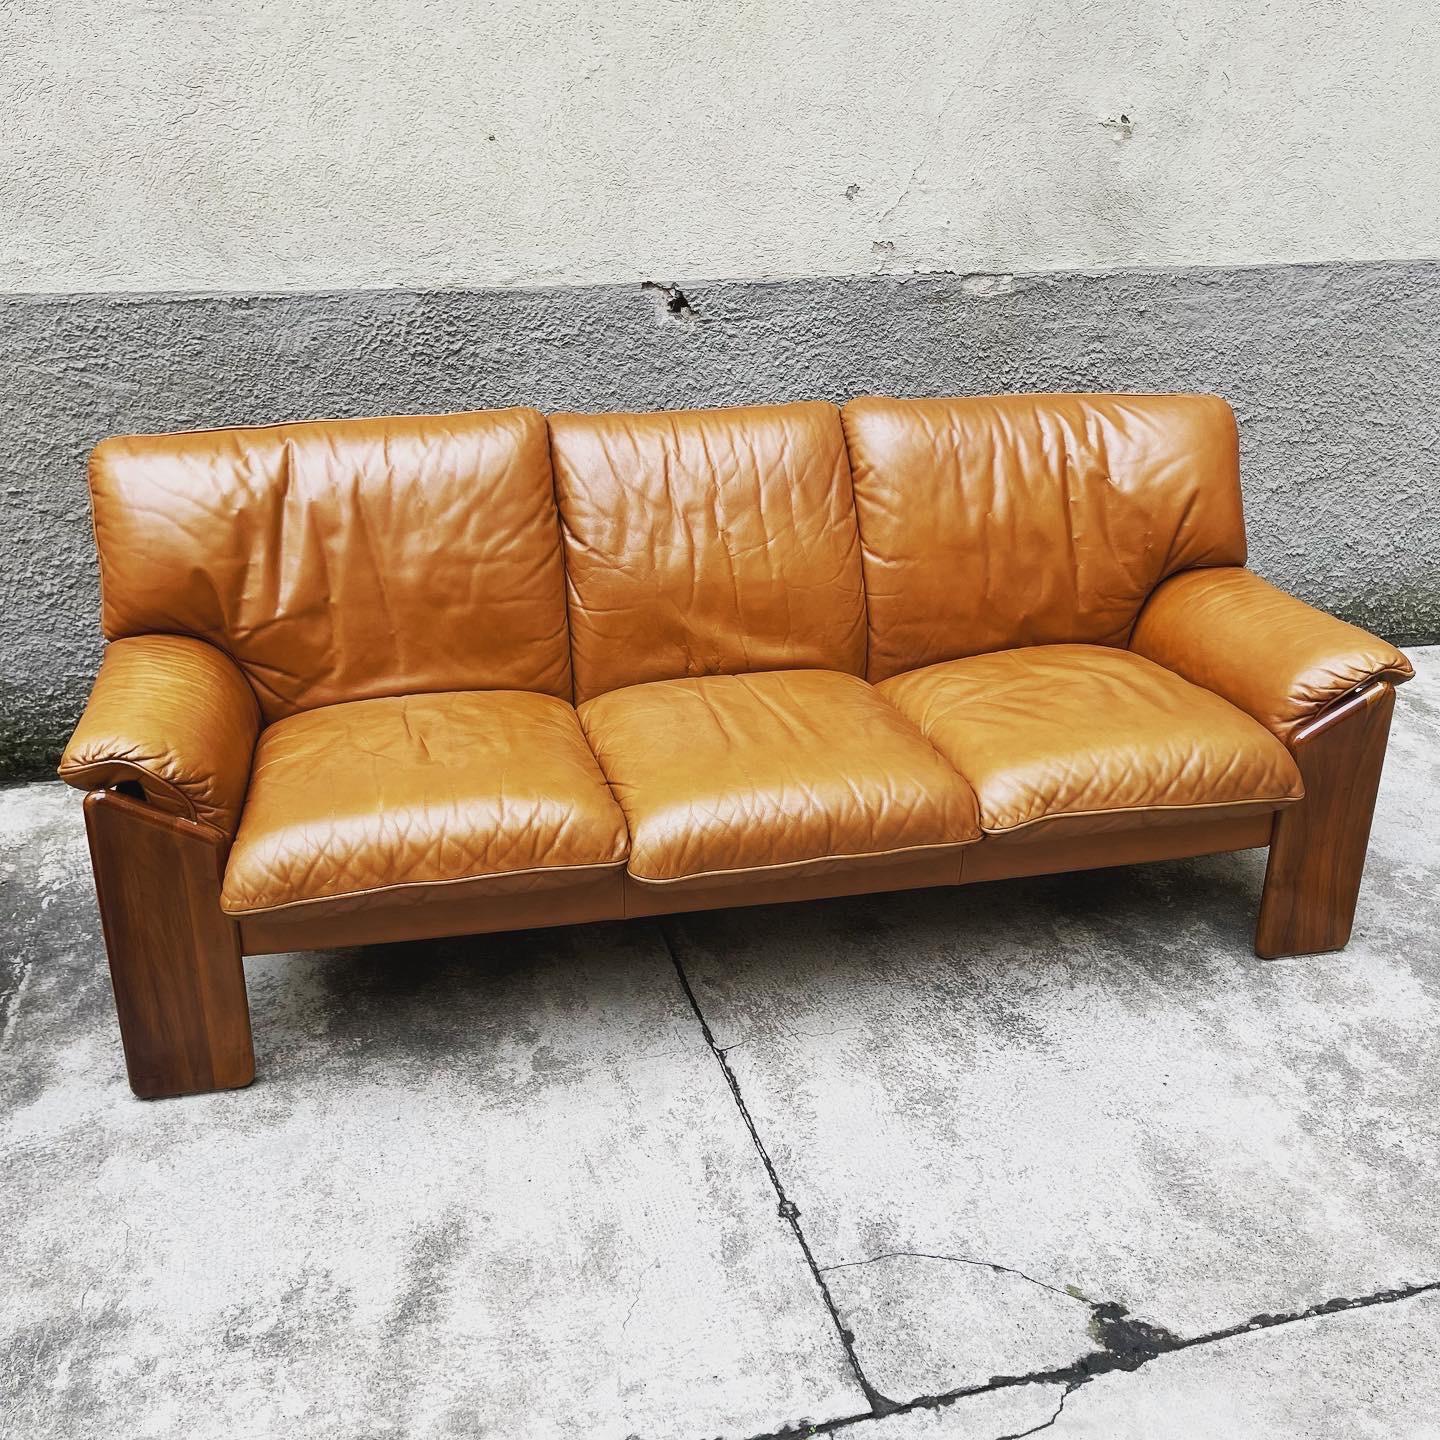 Ein Sofa aus Nussbaum und Leder aus der Sapporo Line, entworfen von Mario Marenco für Mobil Girgi, hergestellt in den 1970er Jahren, Italien. Markiert unter den Polstern. Wunderschönes Design mit abgewinkelten Vorderbeinen, die sich bis zu den